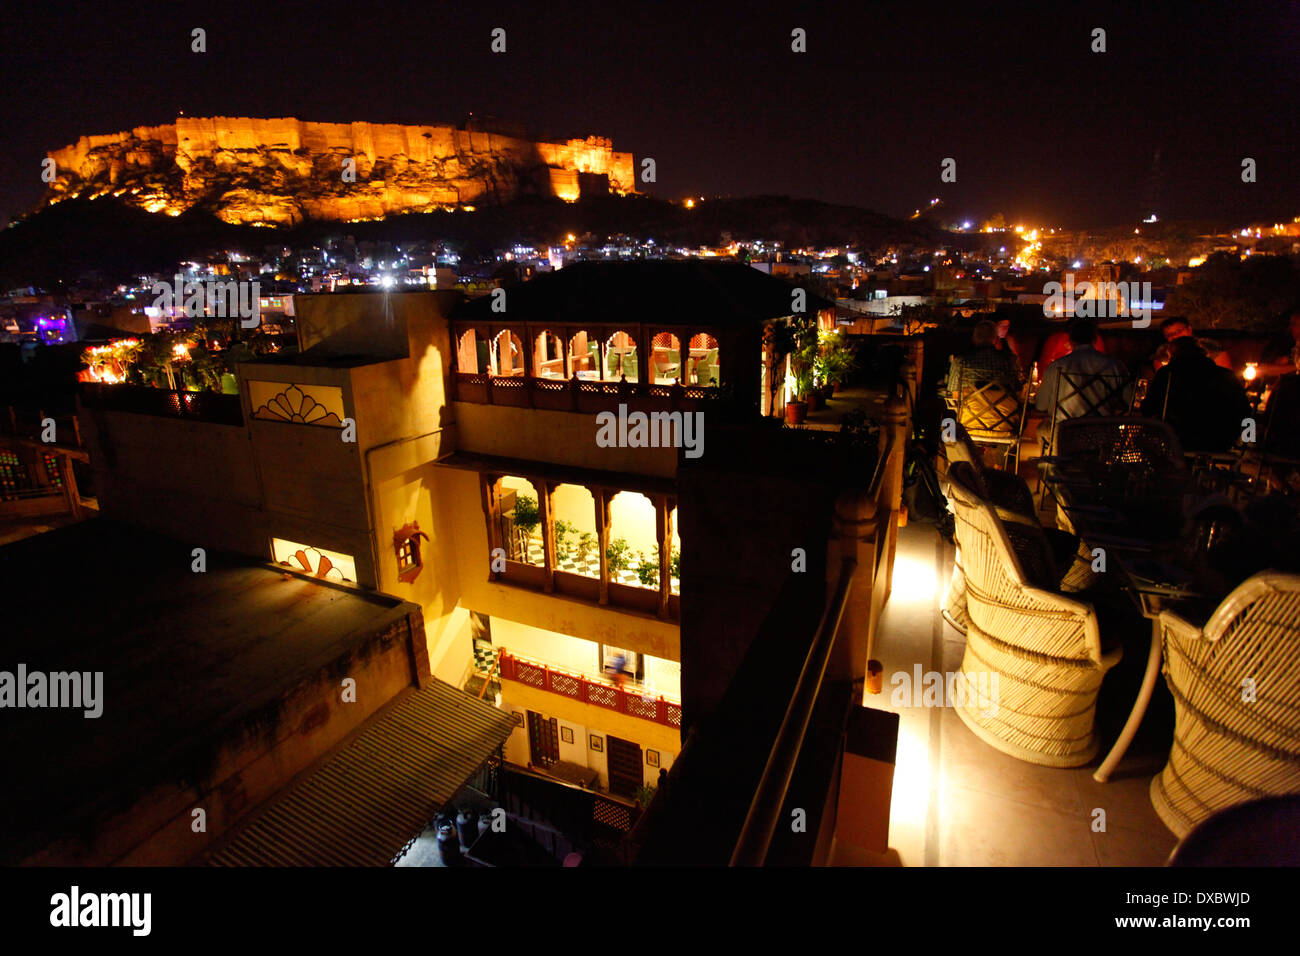 Blick auf die "ehrangarh fort' in der Nacht von den "Pal Haveli' Restaurant Terrasse. Jodhpur, Rajasthan, Indien. Stockfoto